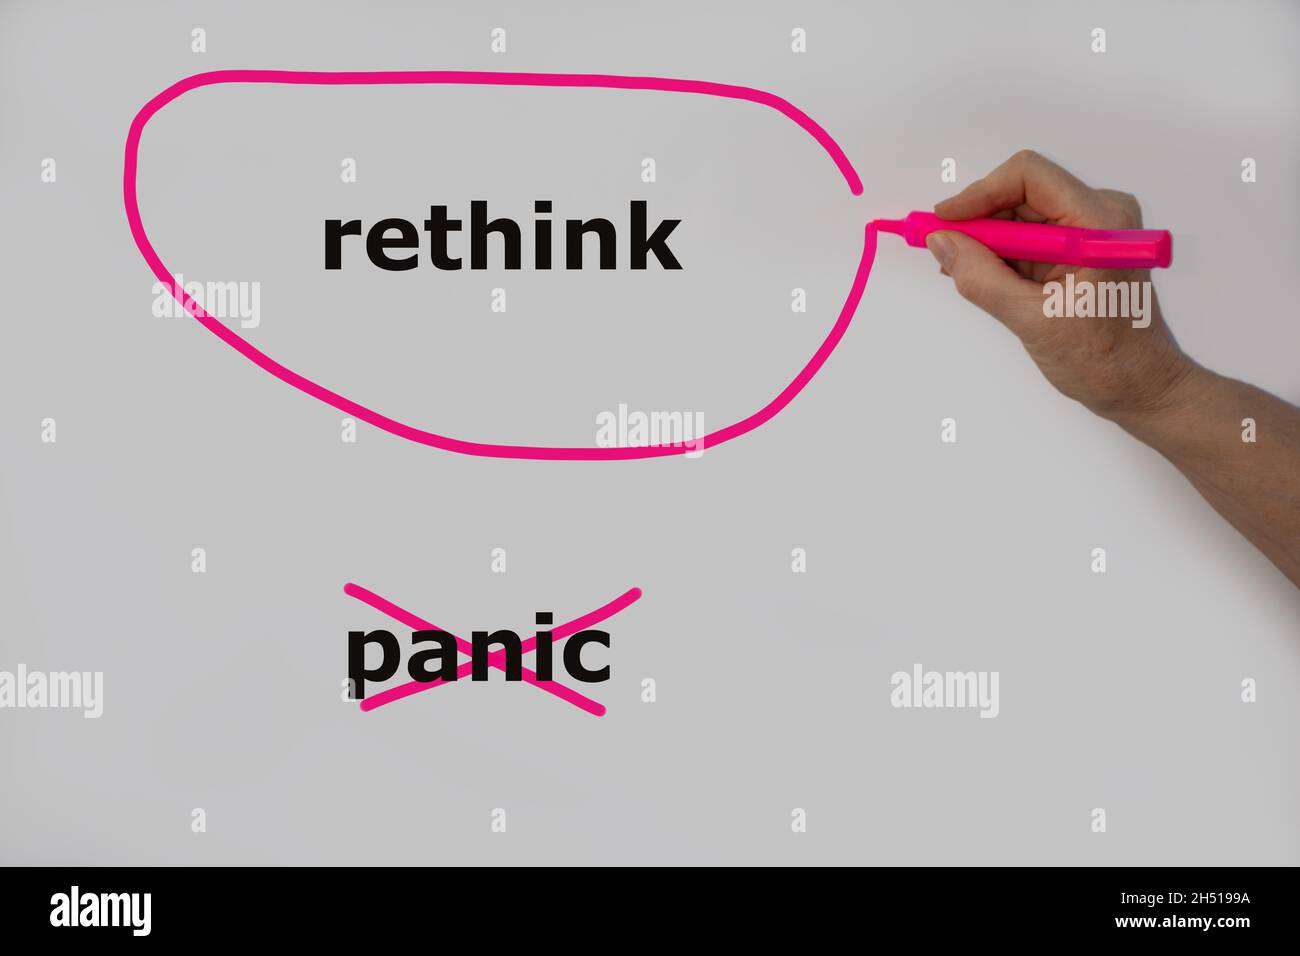 Rethink als Alternative zur Panik wird mit einer Hand auf eine weiße Wand geschrieben, rethink ist mit einem pinken Stift umrandet und Panik wurde durchgestrichen Stockfoto